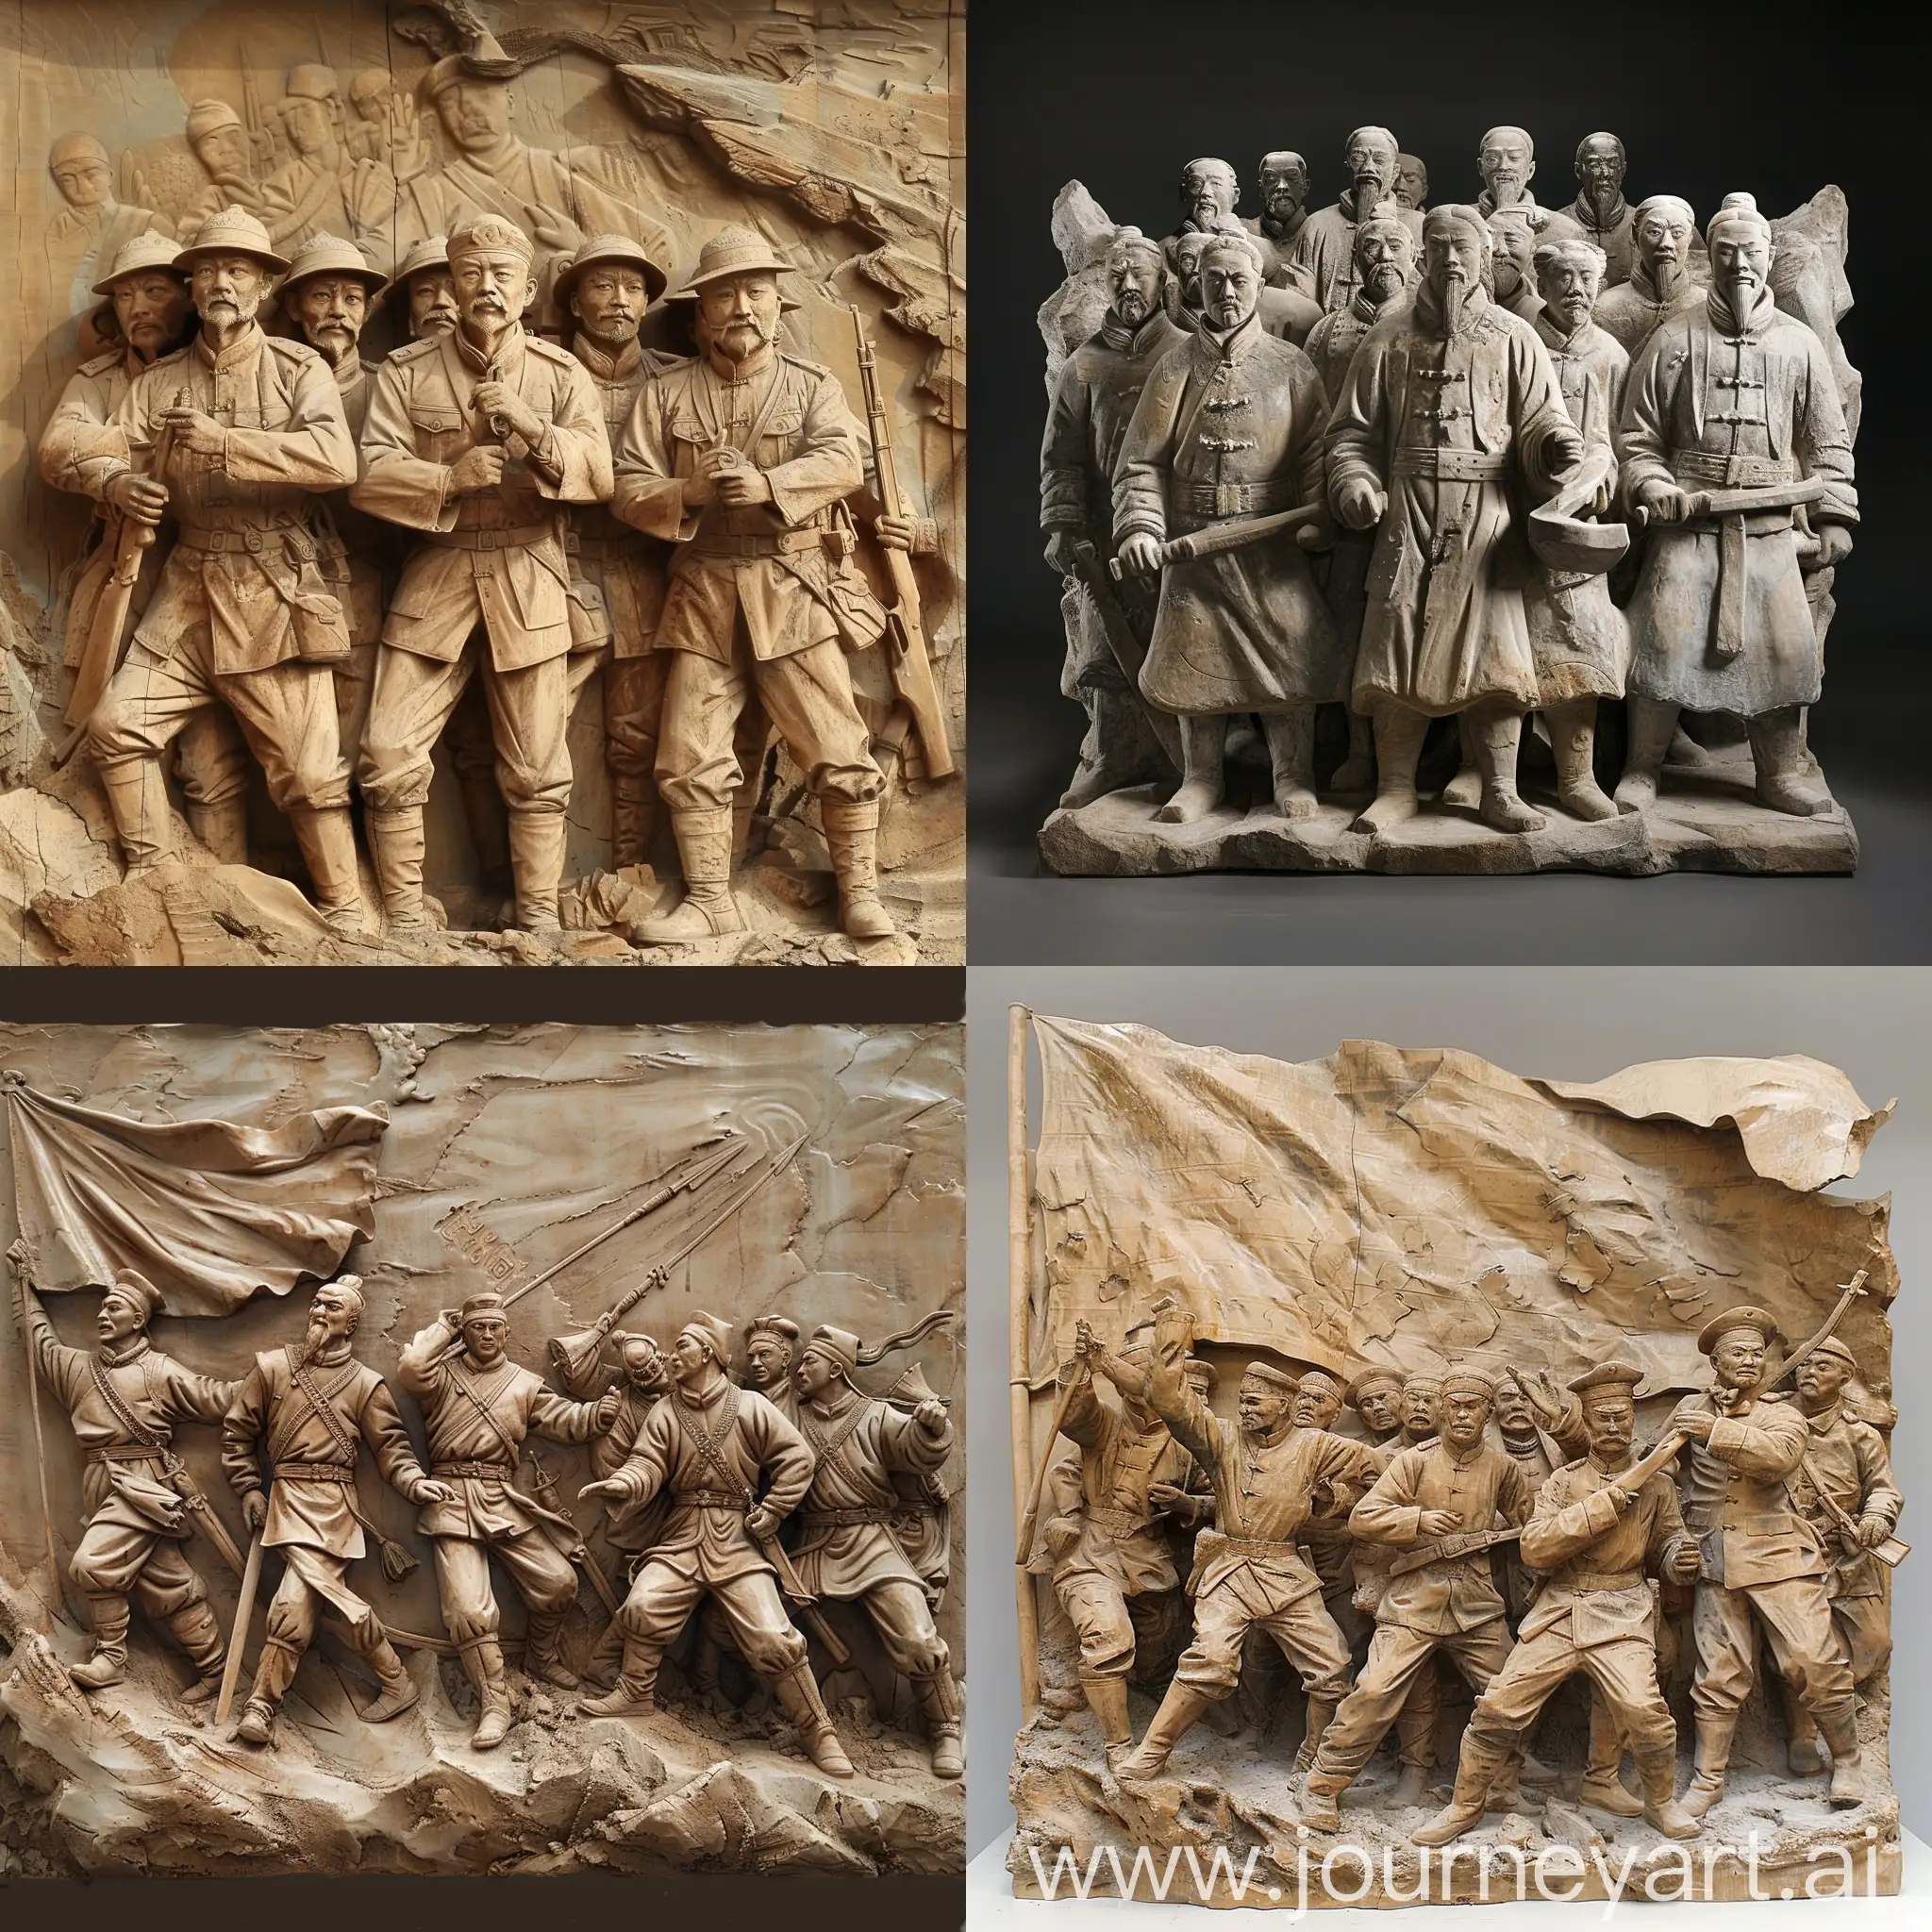 抗日时期福建叶飞将军领队冲锋陷阵的雕塑群